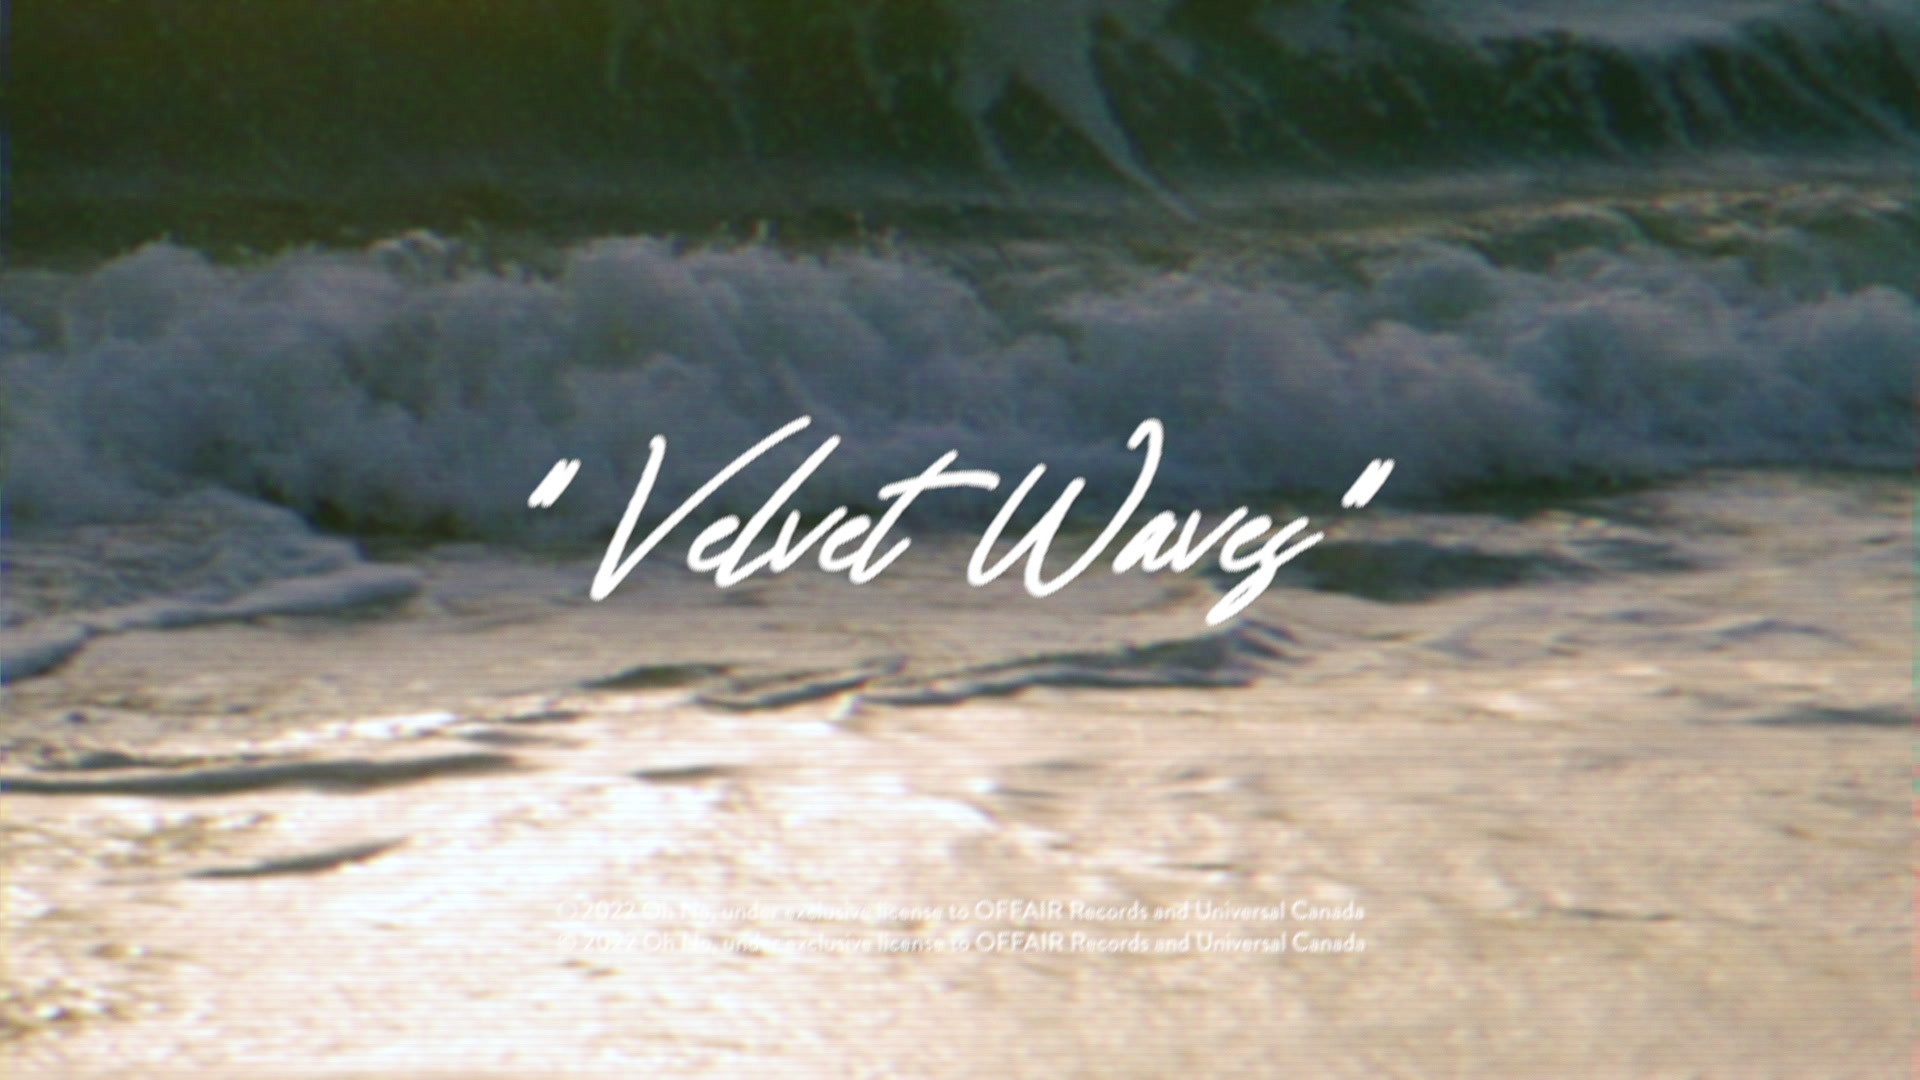 Velvet Waves